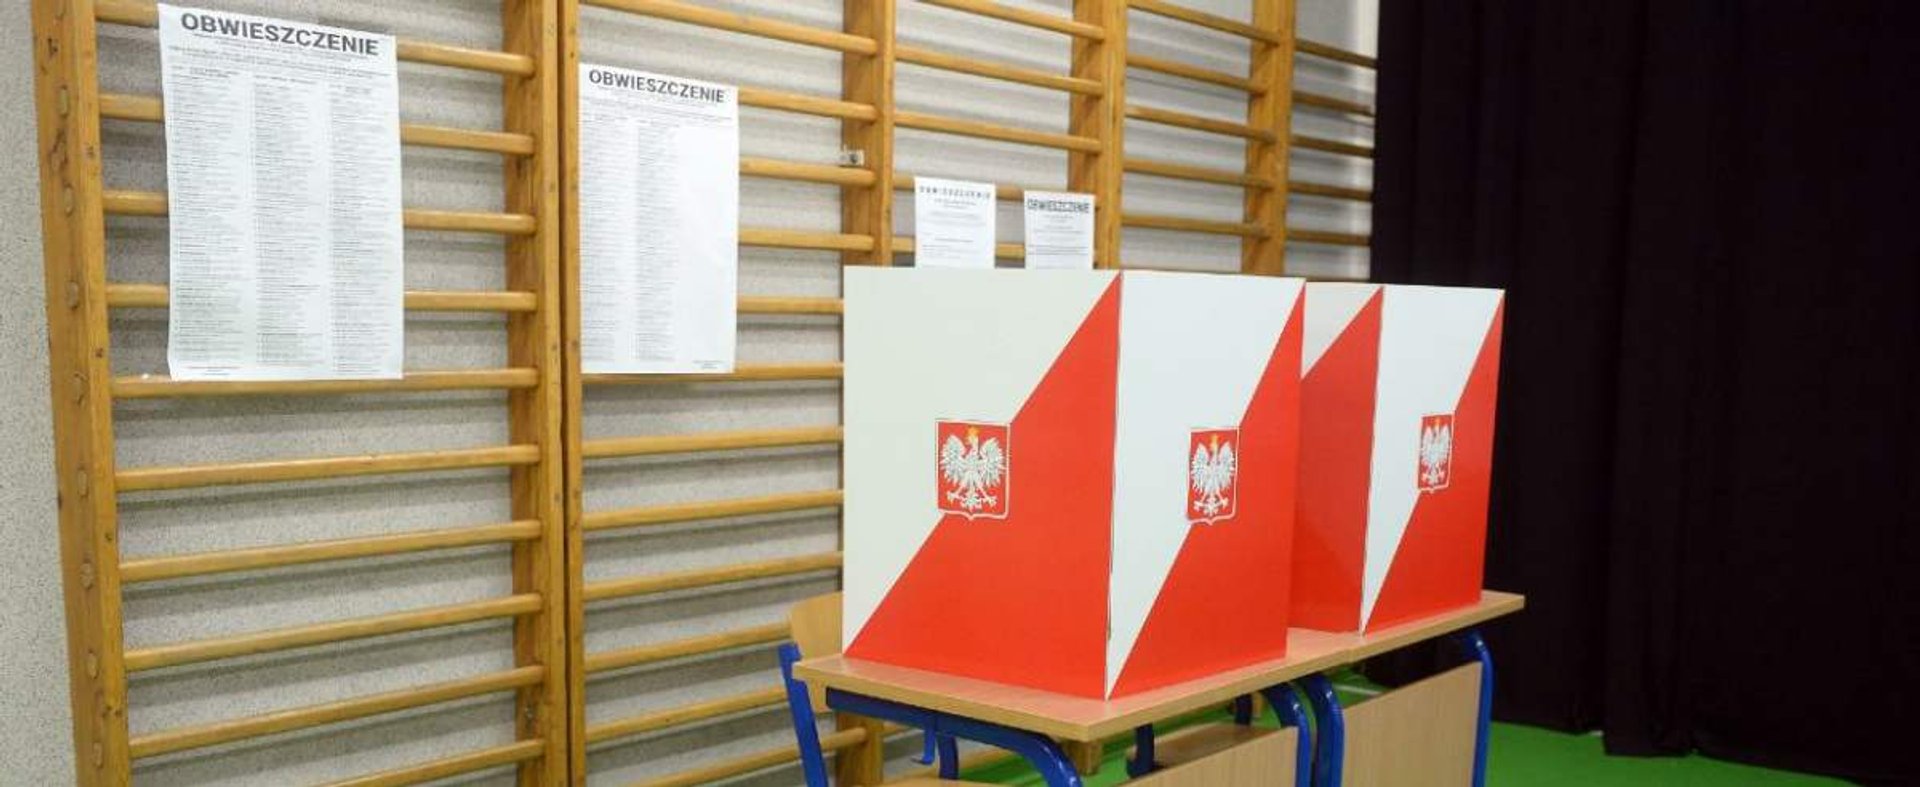 Fot. Jan Bielecki/East News, Warszawa, 13.10.2019. Wybory parlamentarne 2019. Glosowania w komisjach wyborczych.